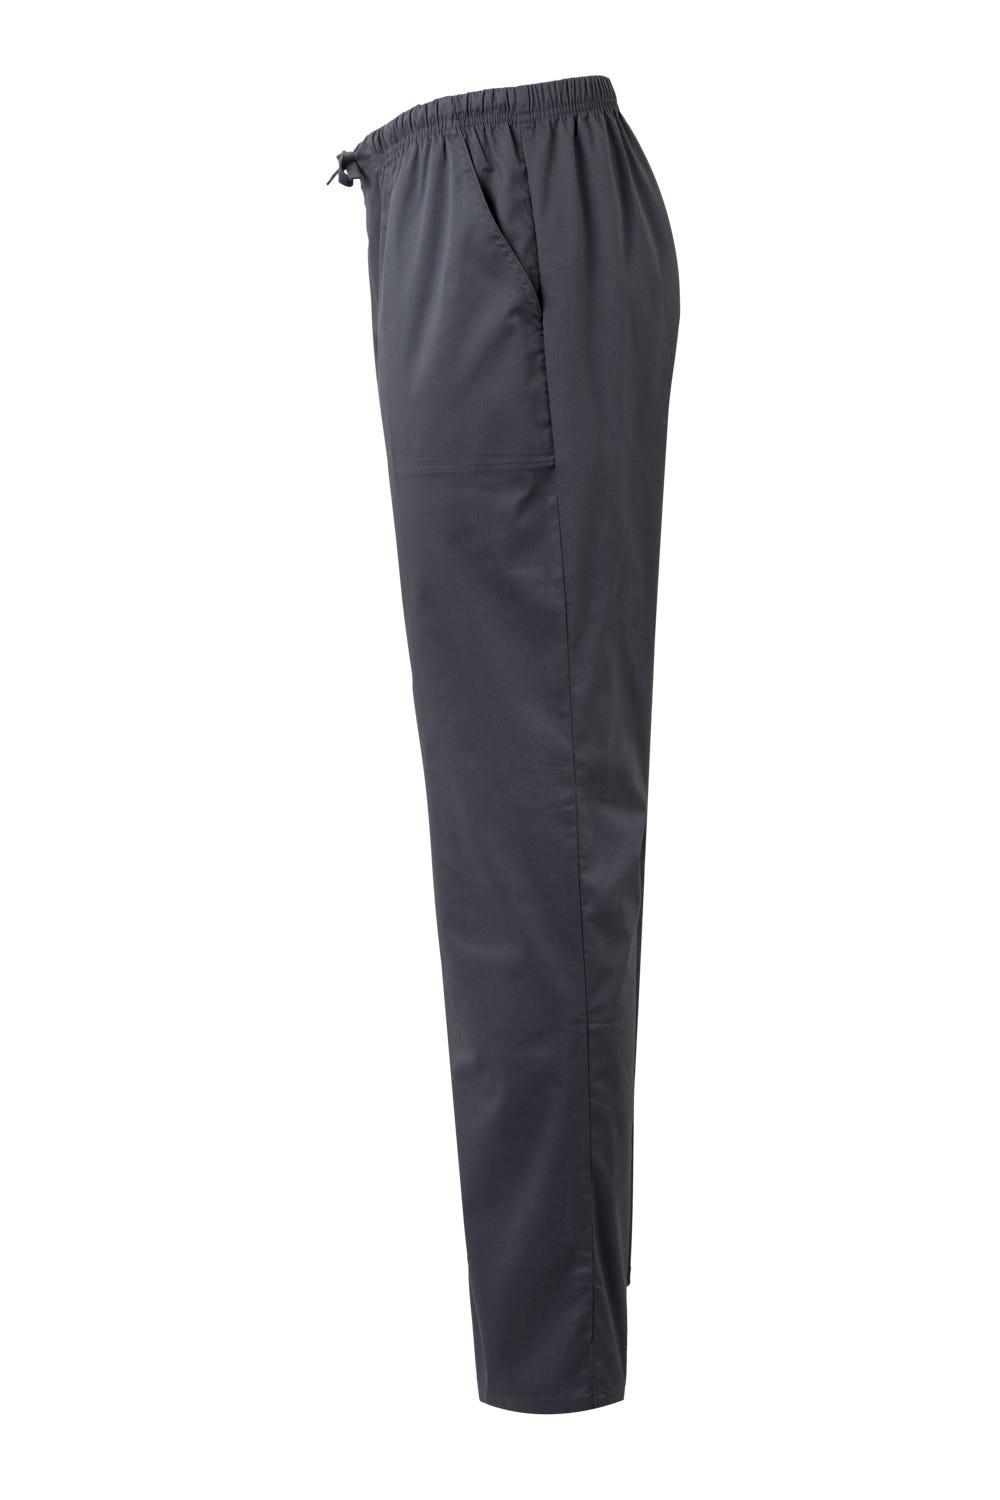 Pantalon Premium Comfort Stretch Gris foncé